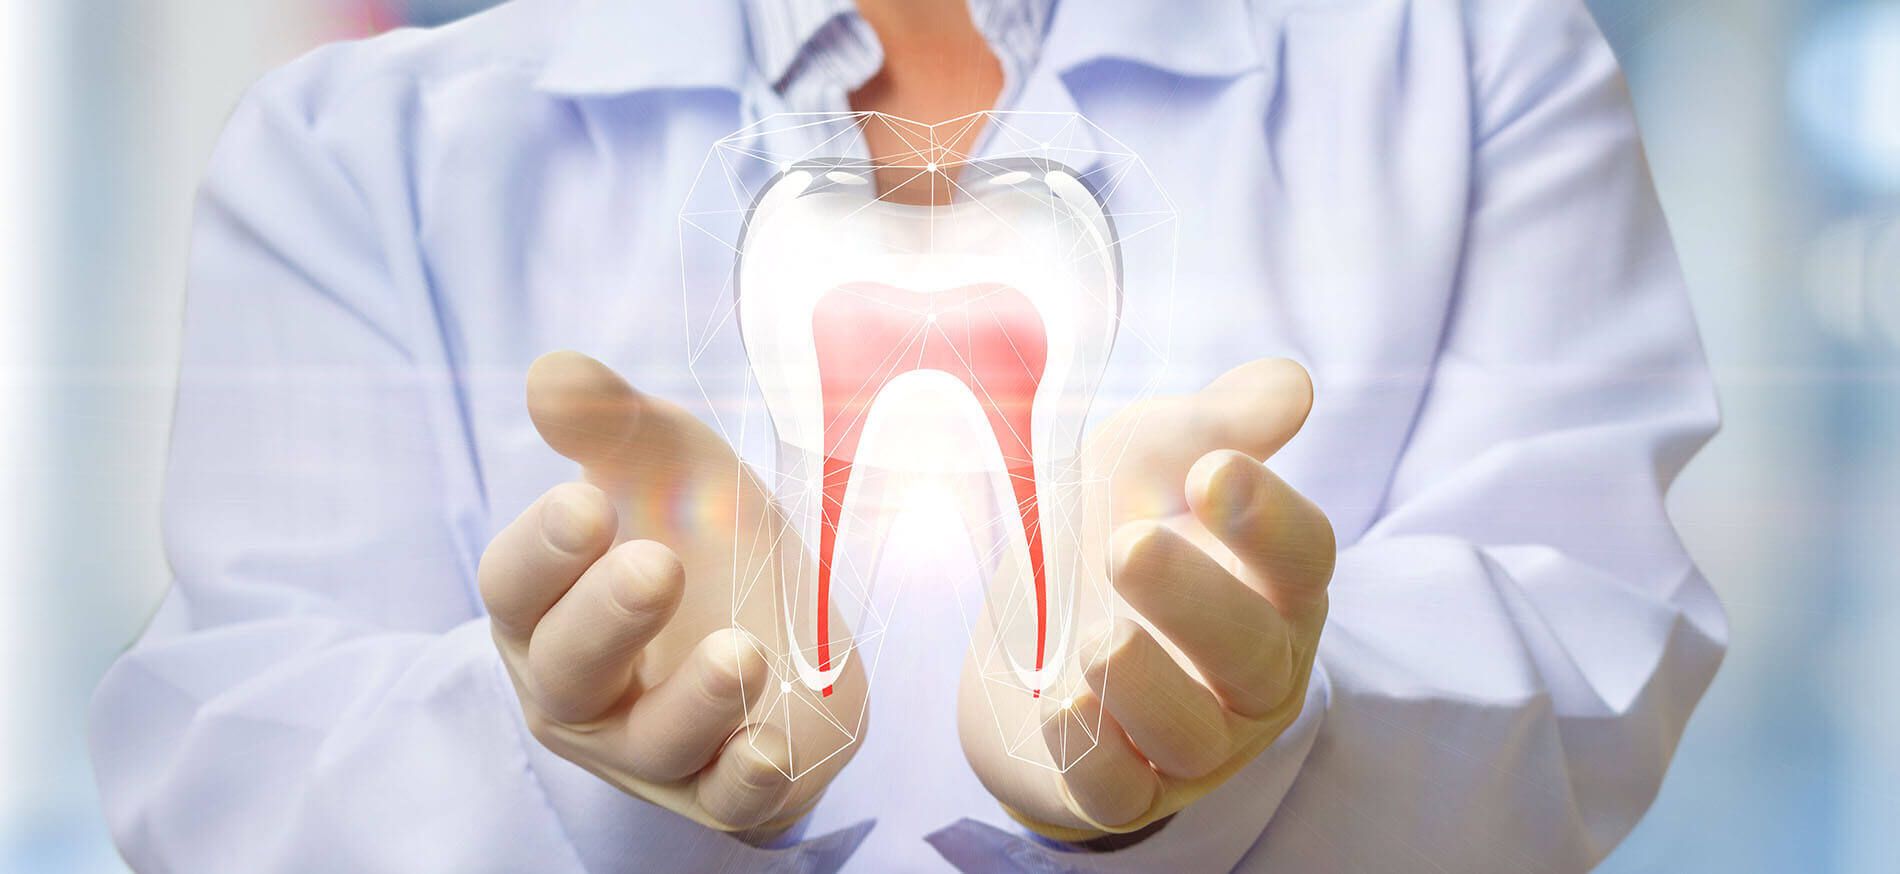 Get An Effective Dental Treatment At AK Global Dent